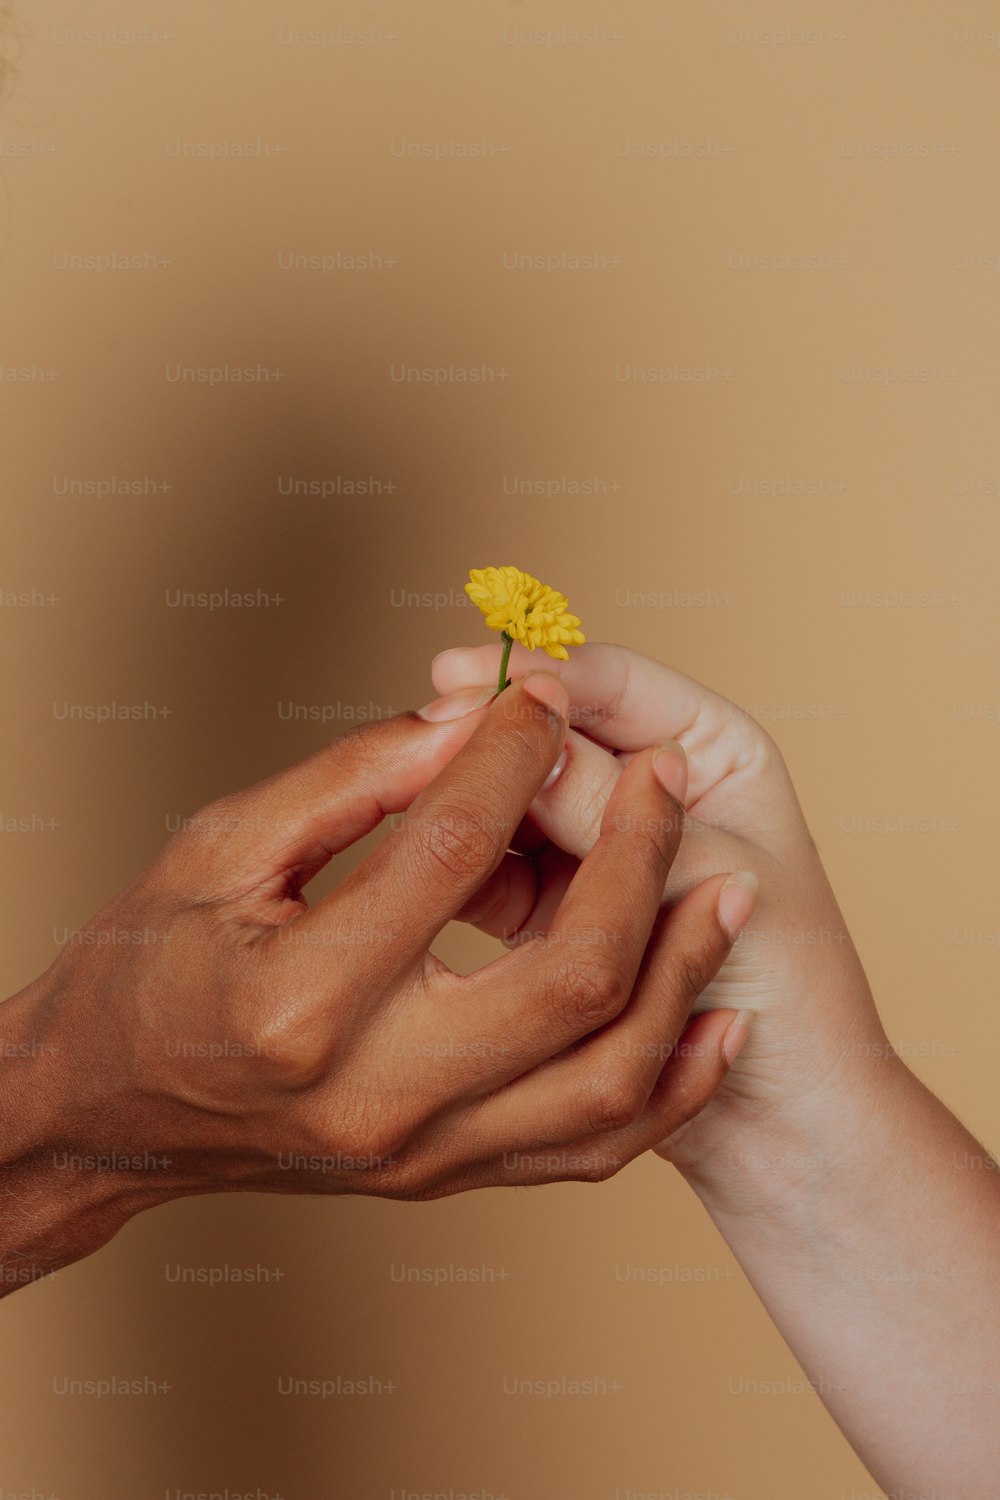 손에 작은 노란 꽃을 들고 있는 사람